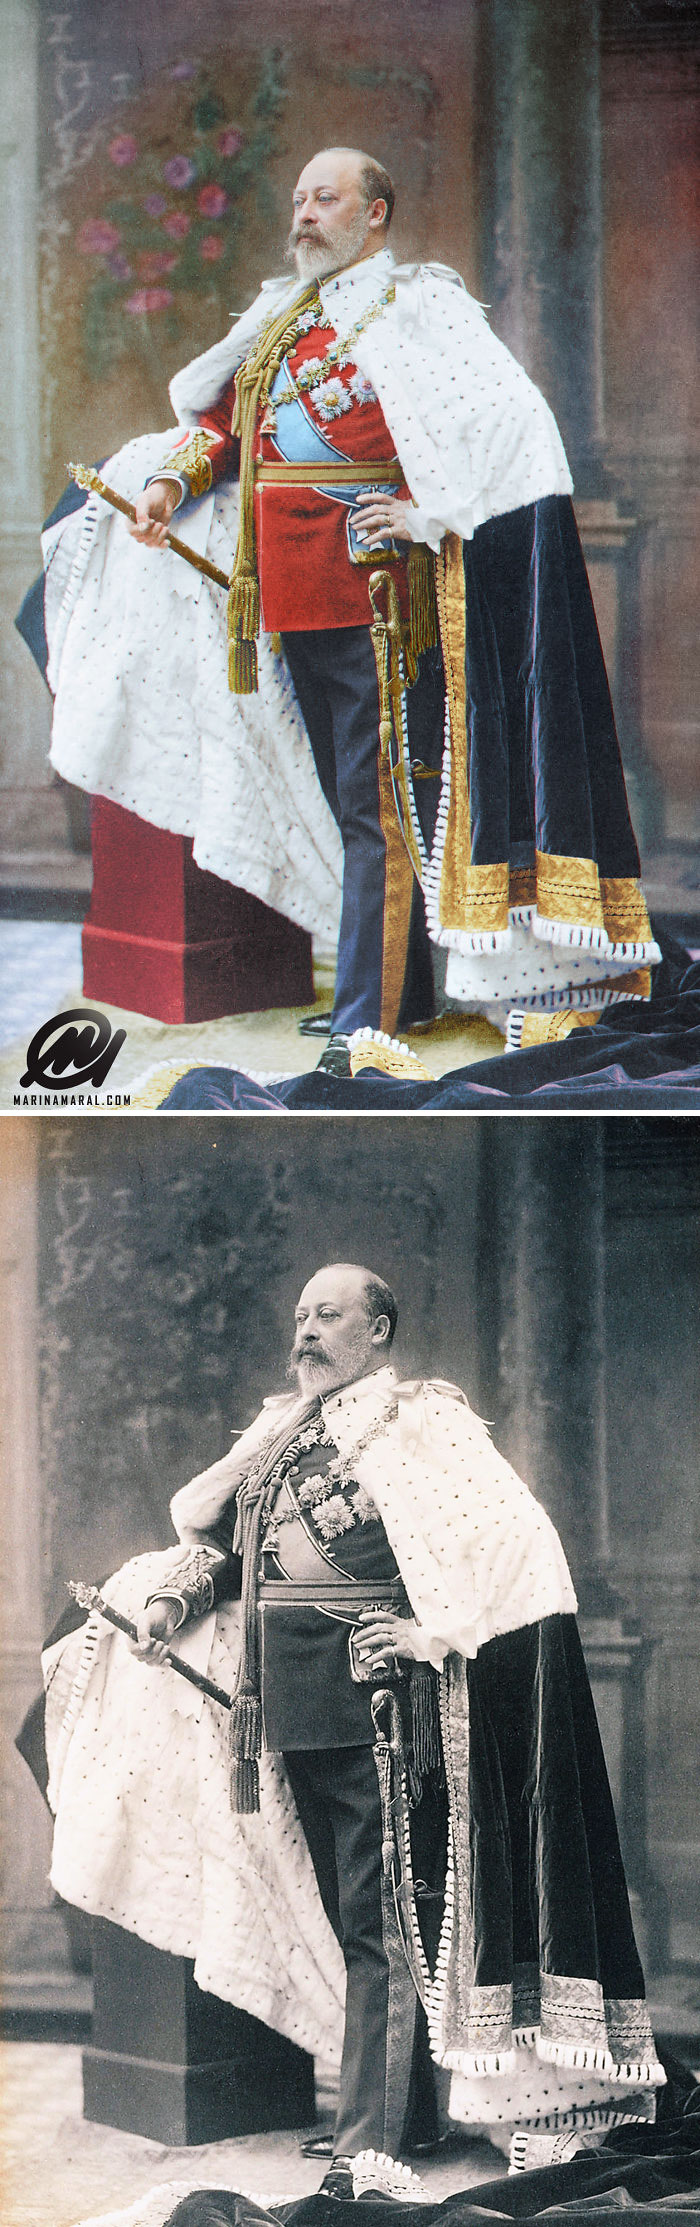 Edward VII At His Coronation, 1902